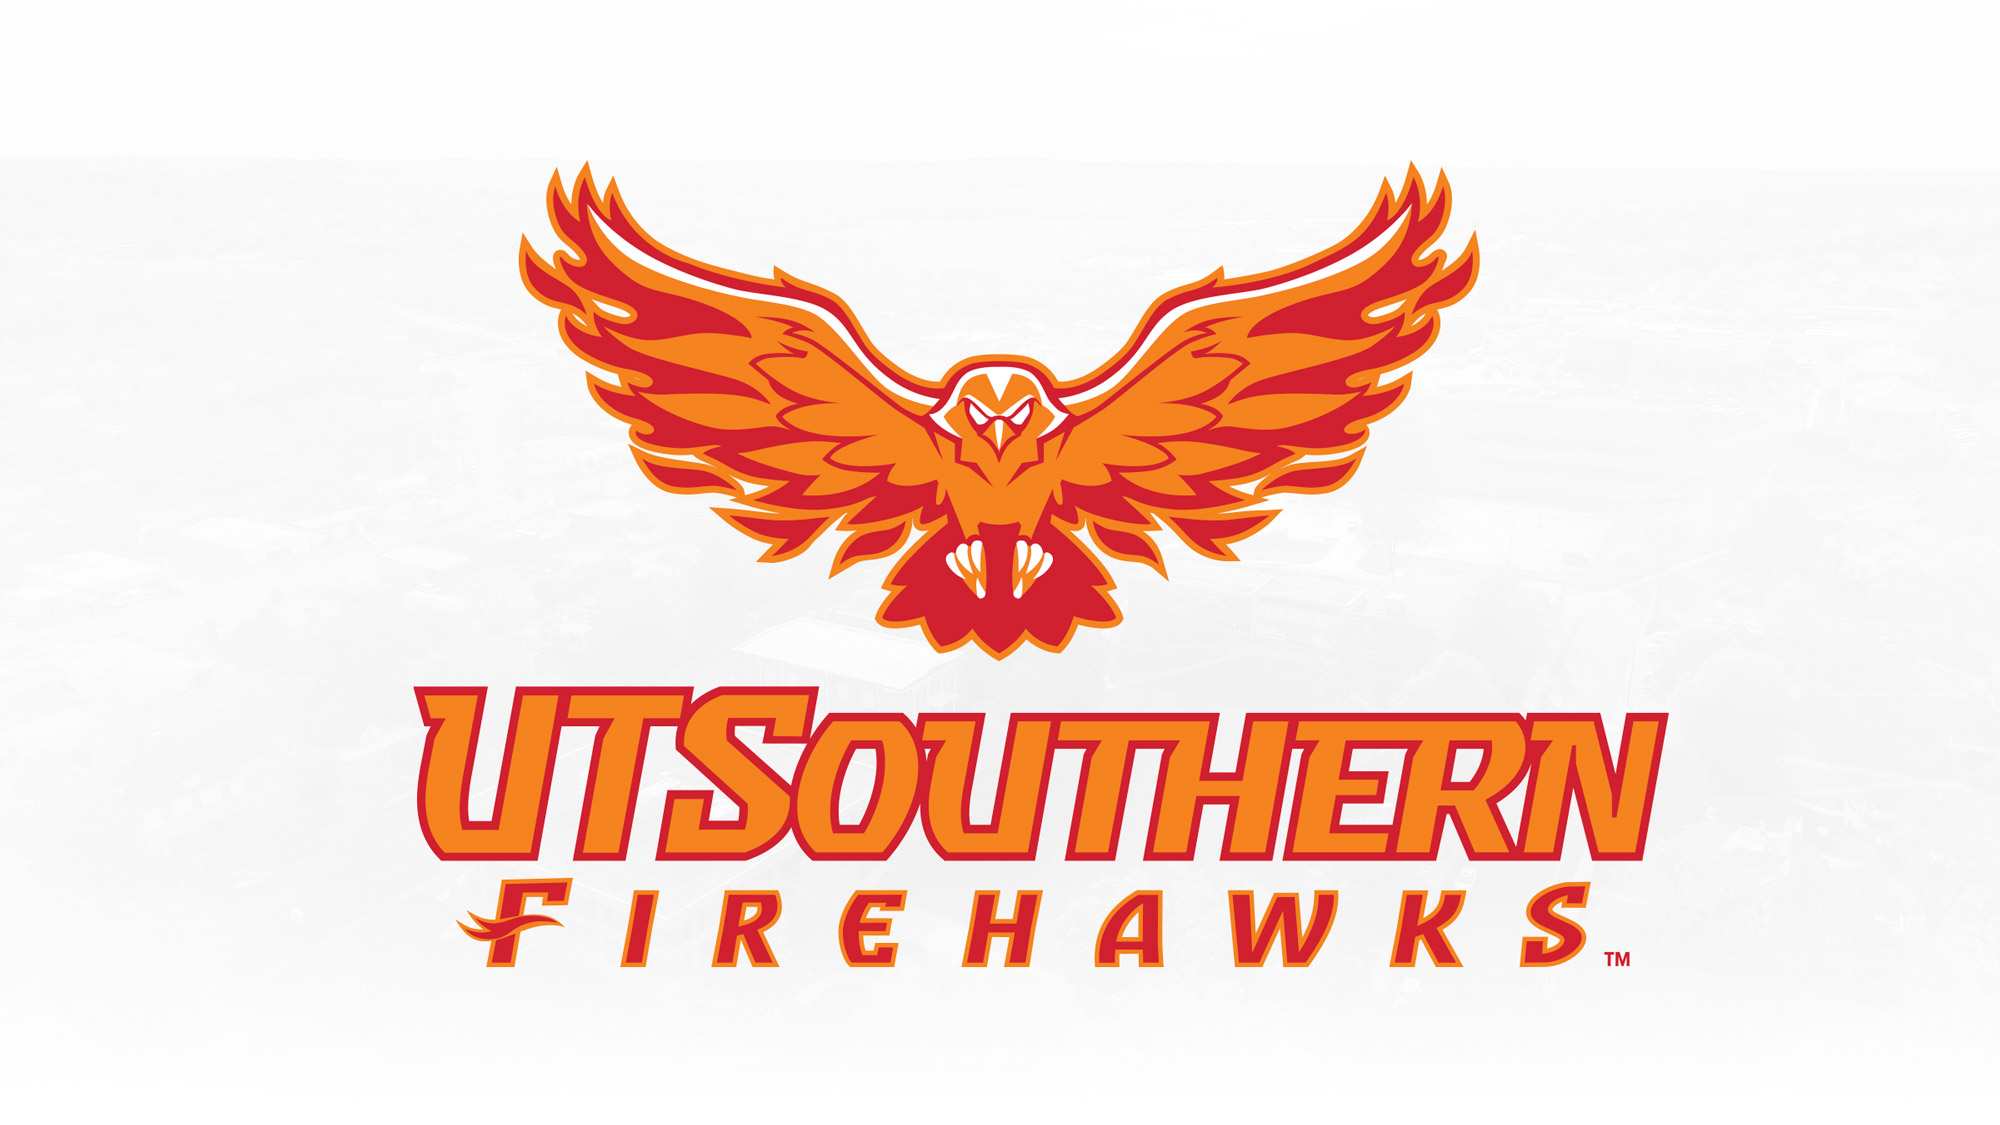 UT Southern Firehawks